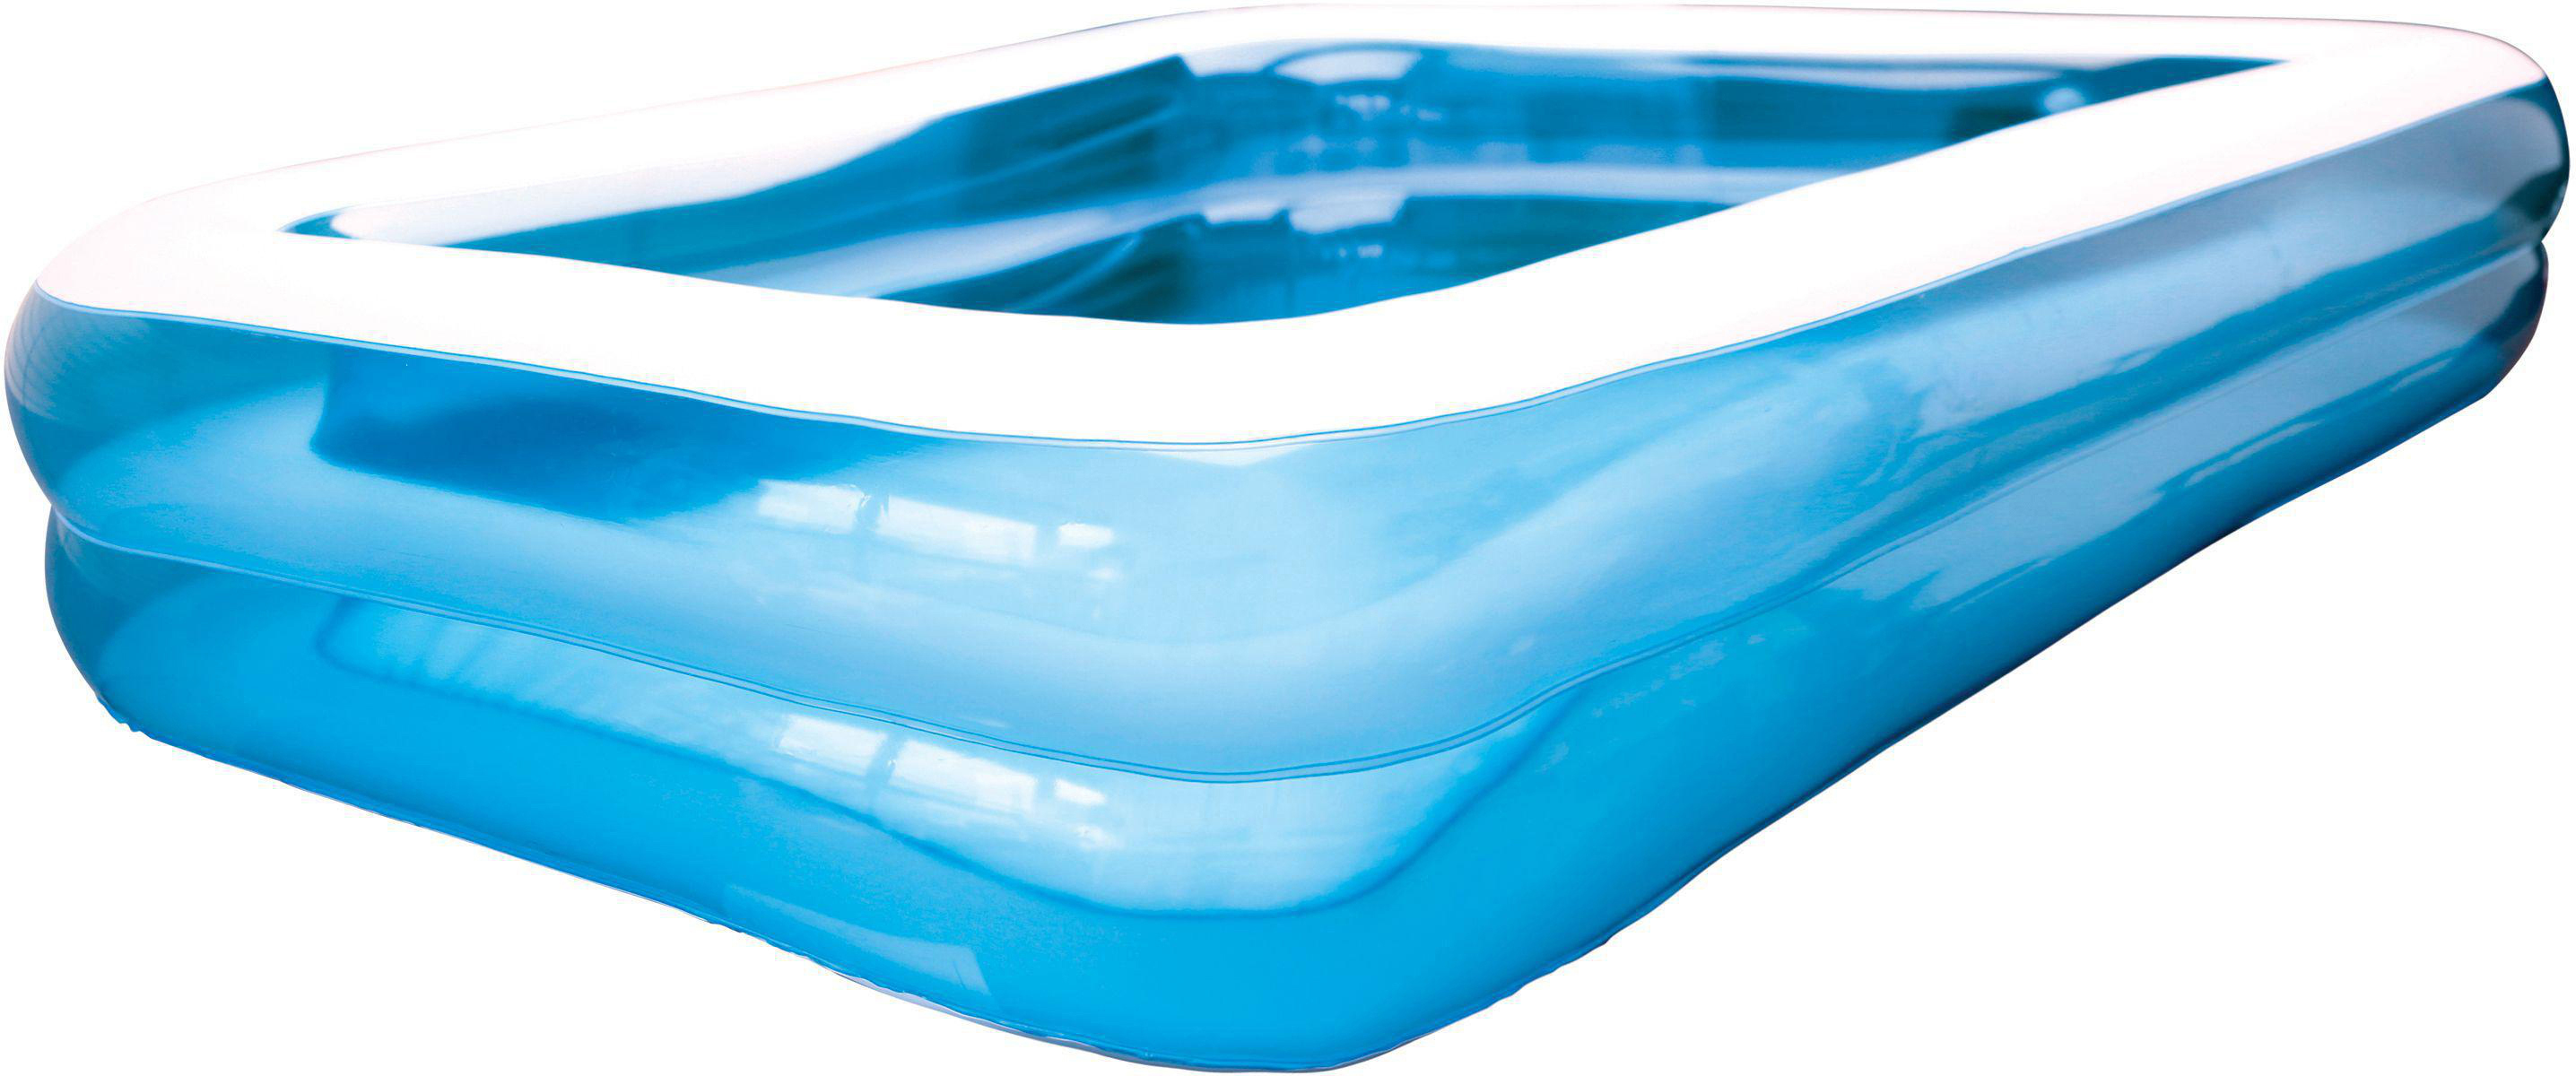 FUN 176x125x38cm Pool Wasserspielzeug Blau SF SPLASH Jumbo